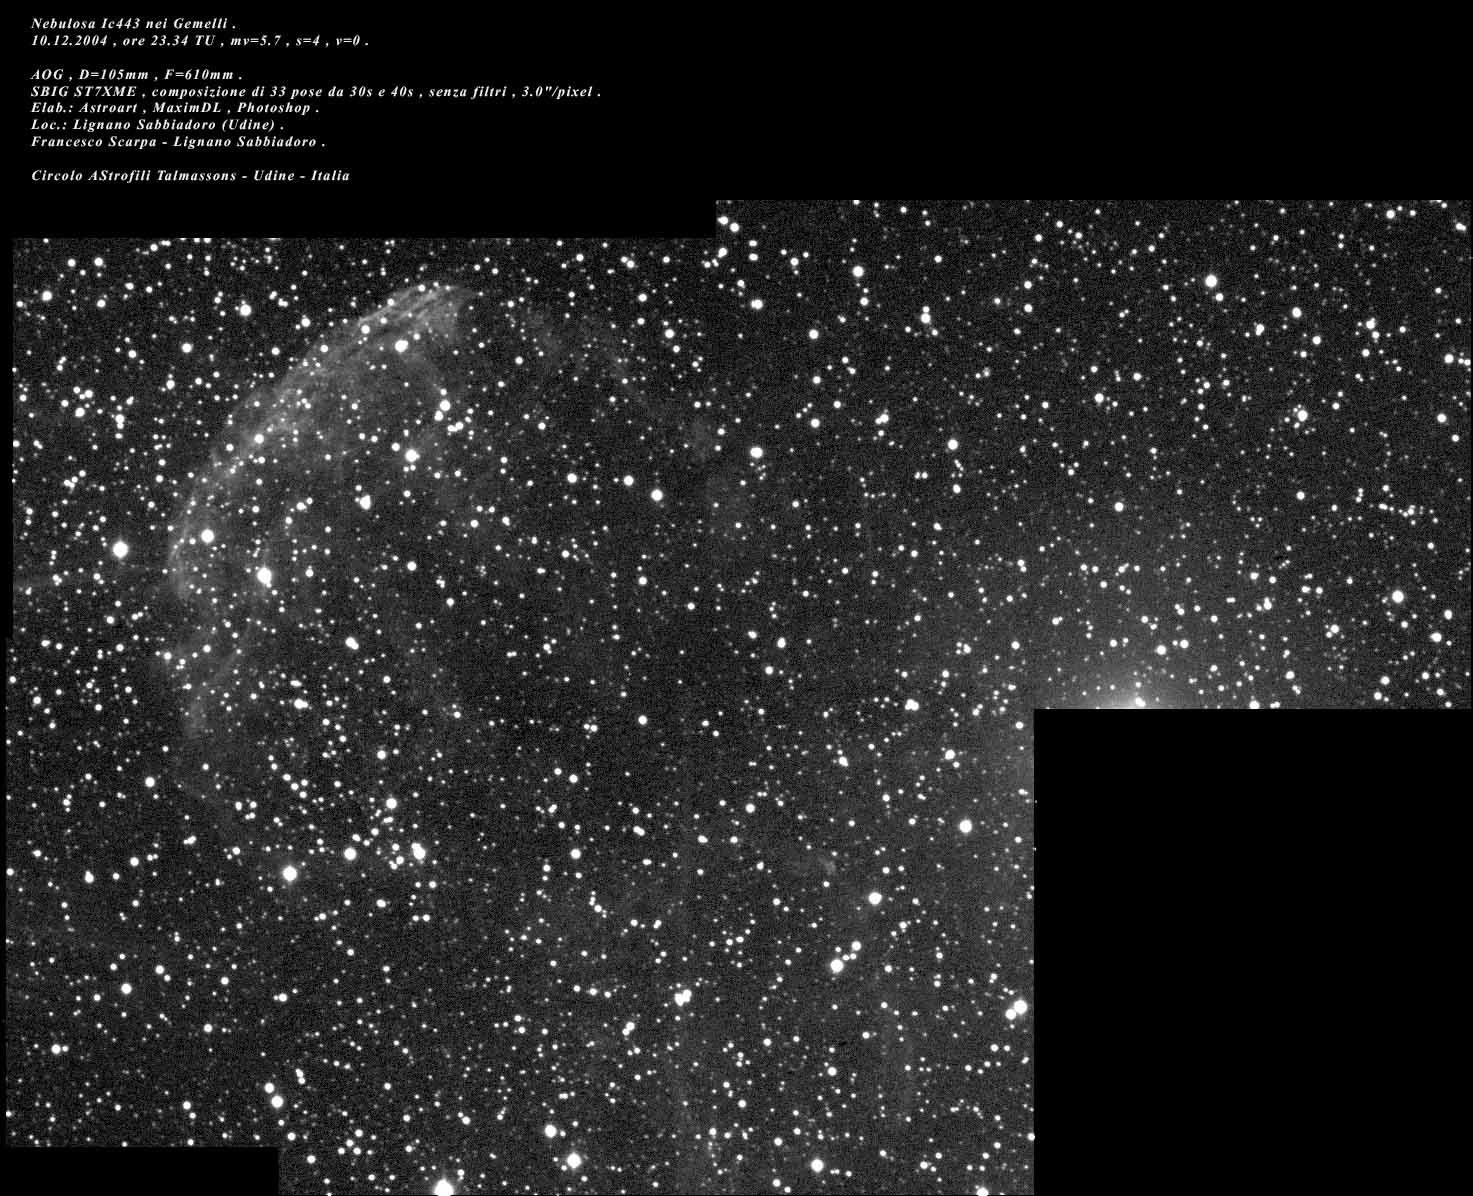 Supernova remnant: 175 KB